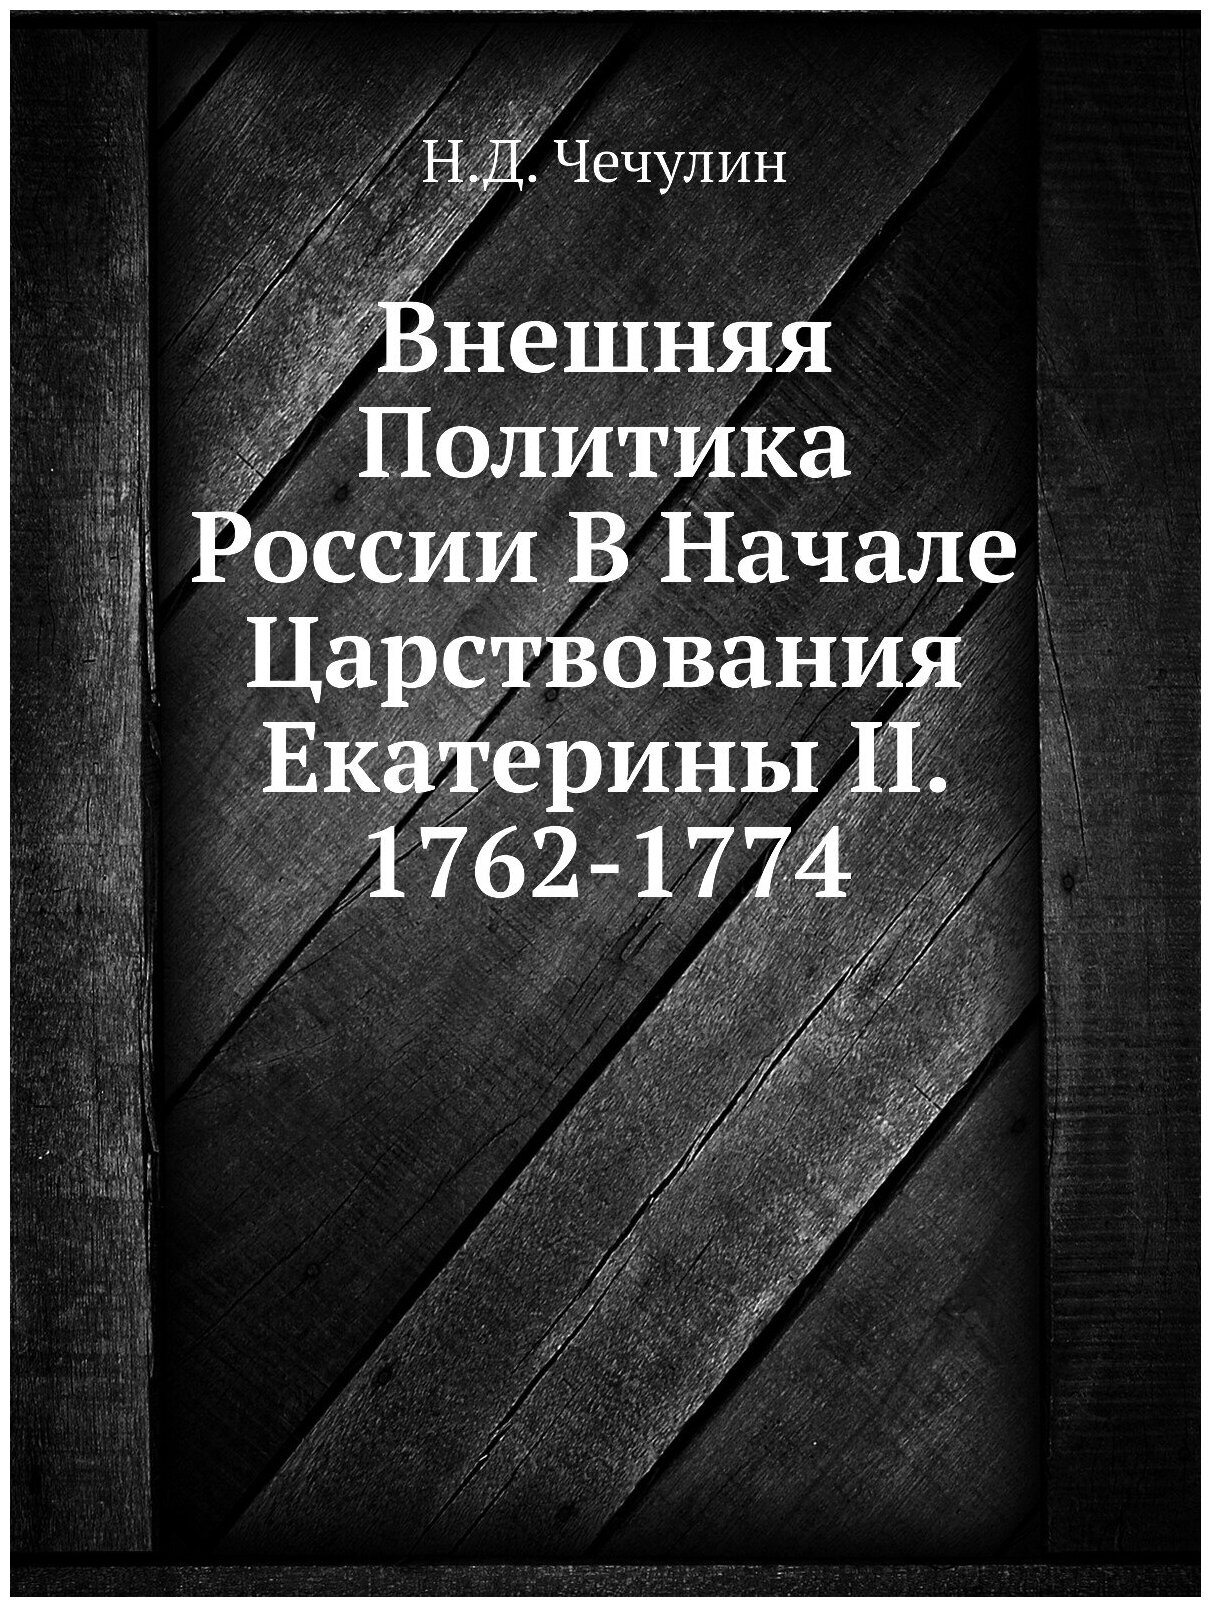 Внешняя Политика России В Начале Царствования Екатерины II. 1762-1774